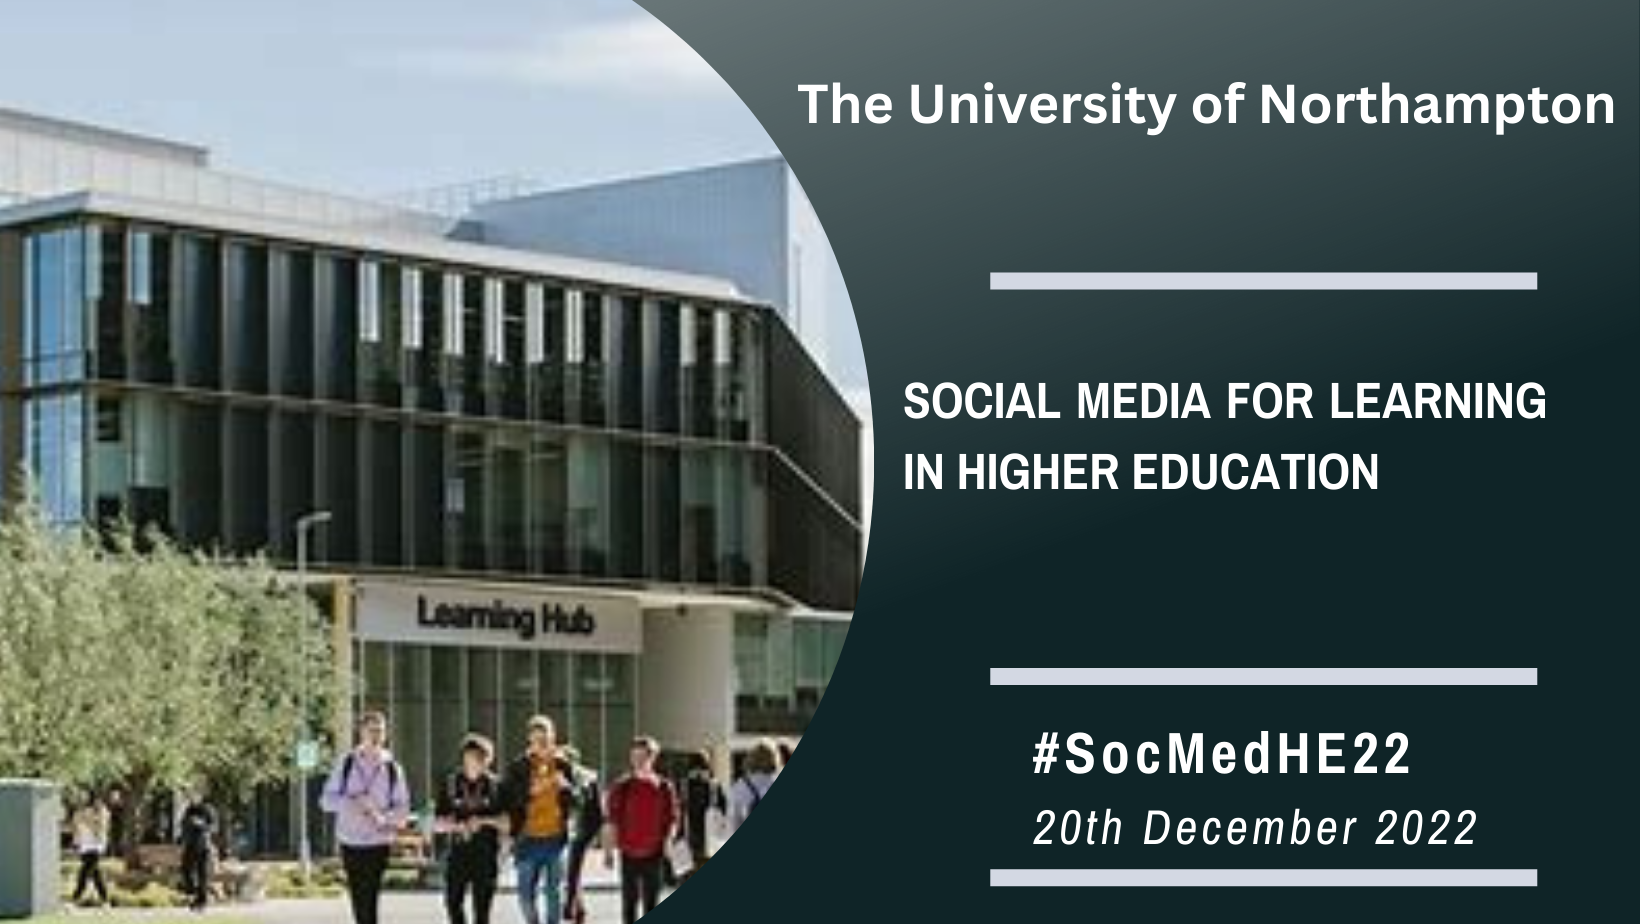 Social Media for Learning in Higher Education Conference -@SocMedHE #SocMedHE22